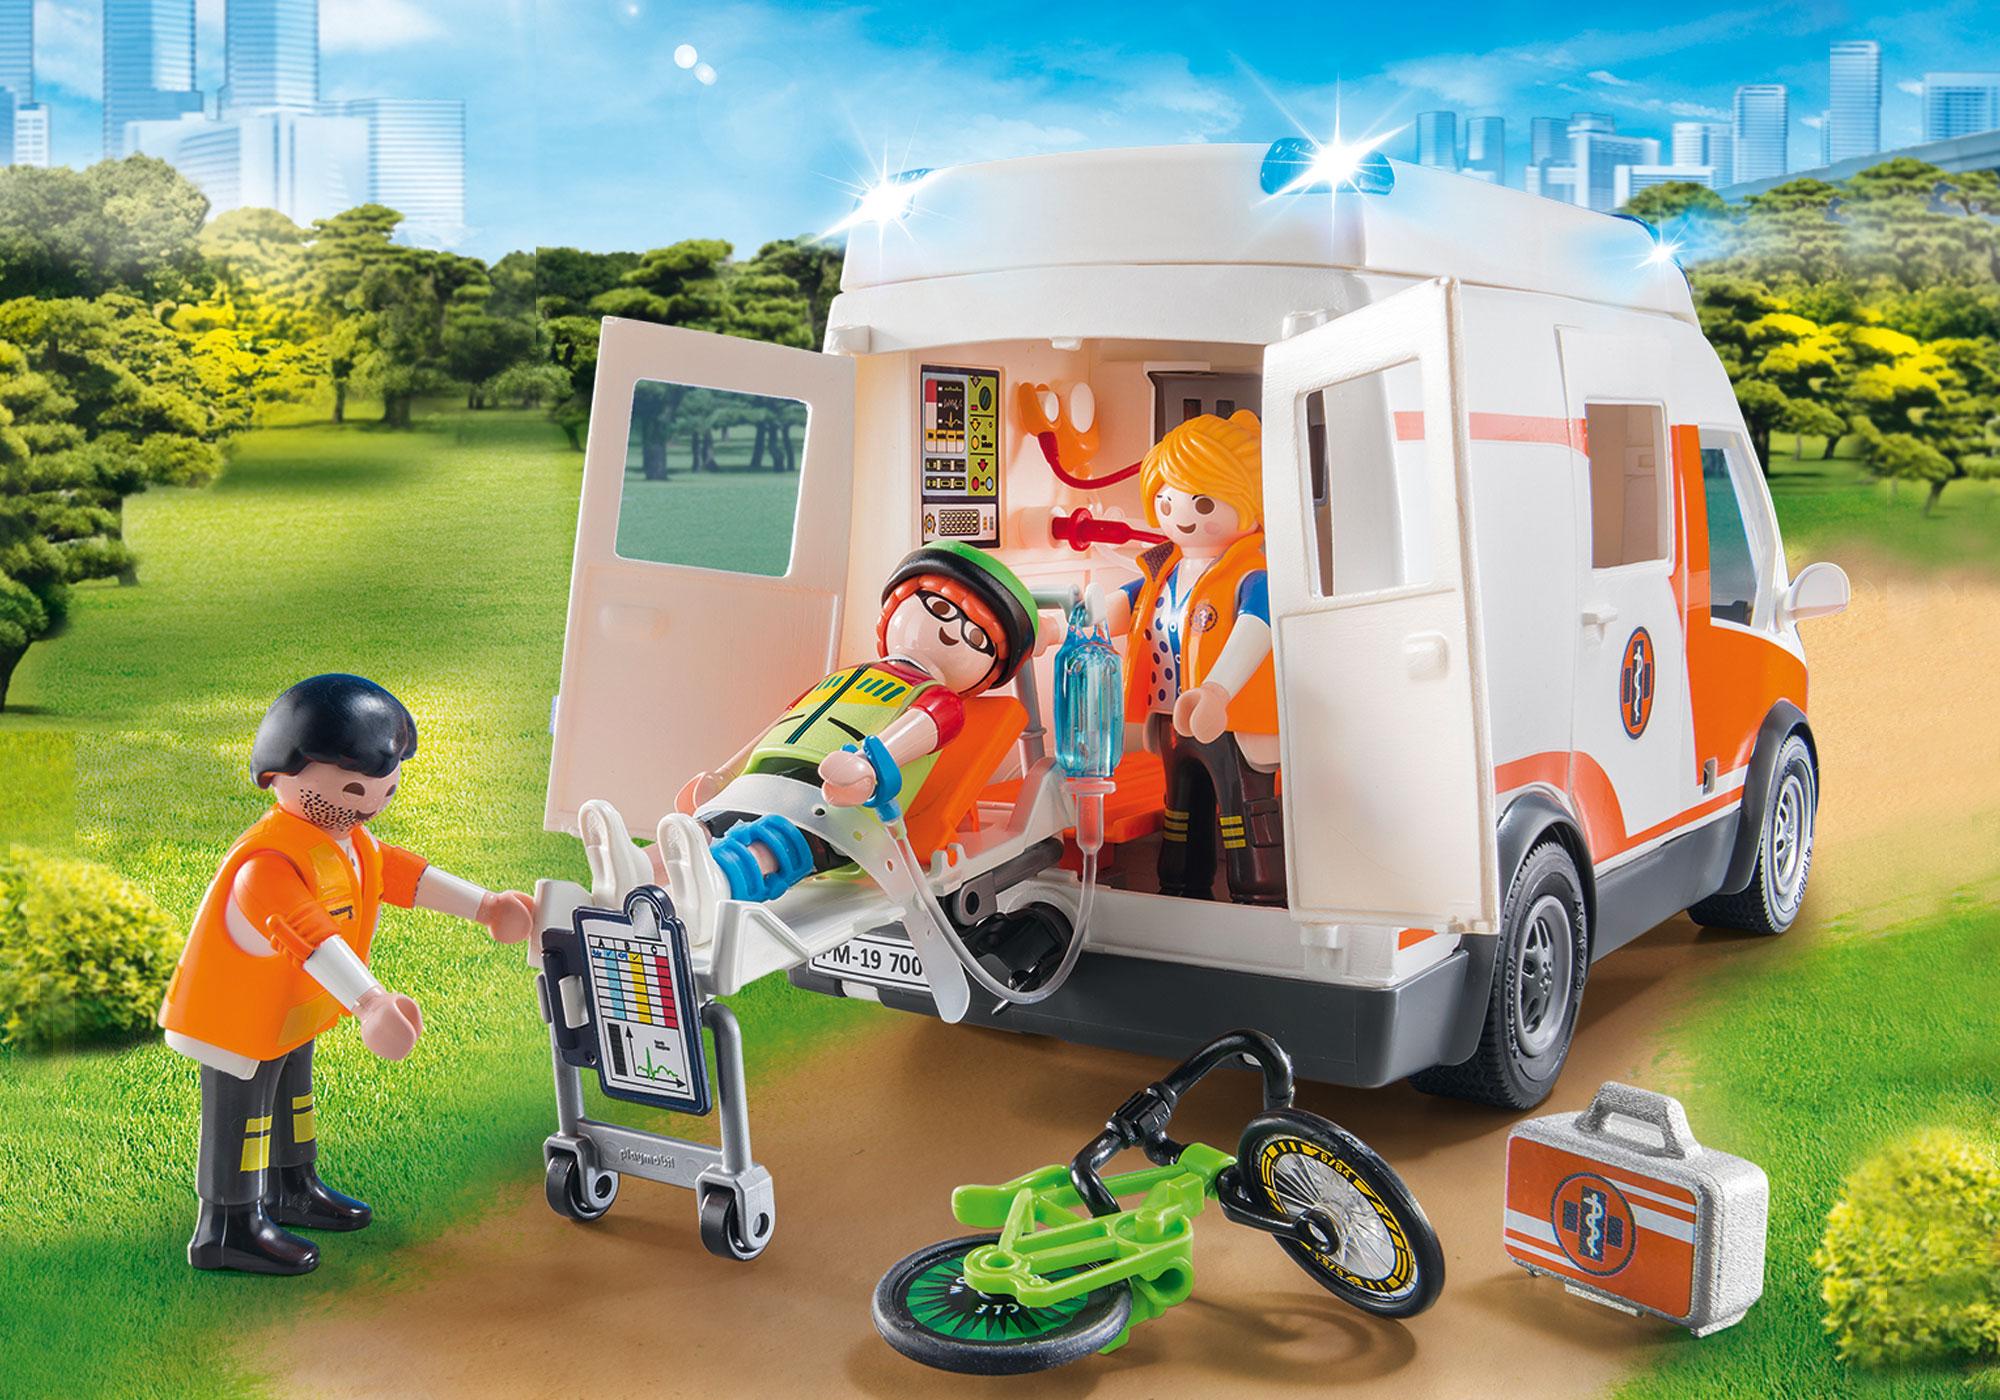 playmobil ambulance set